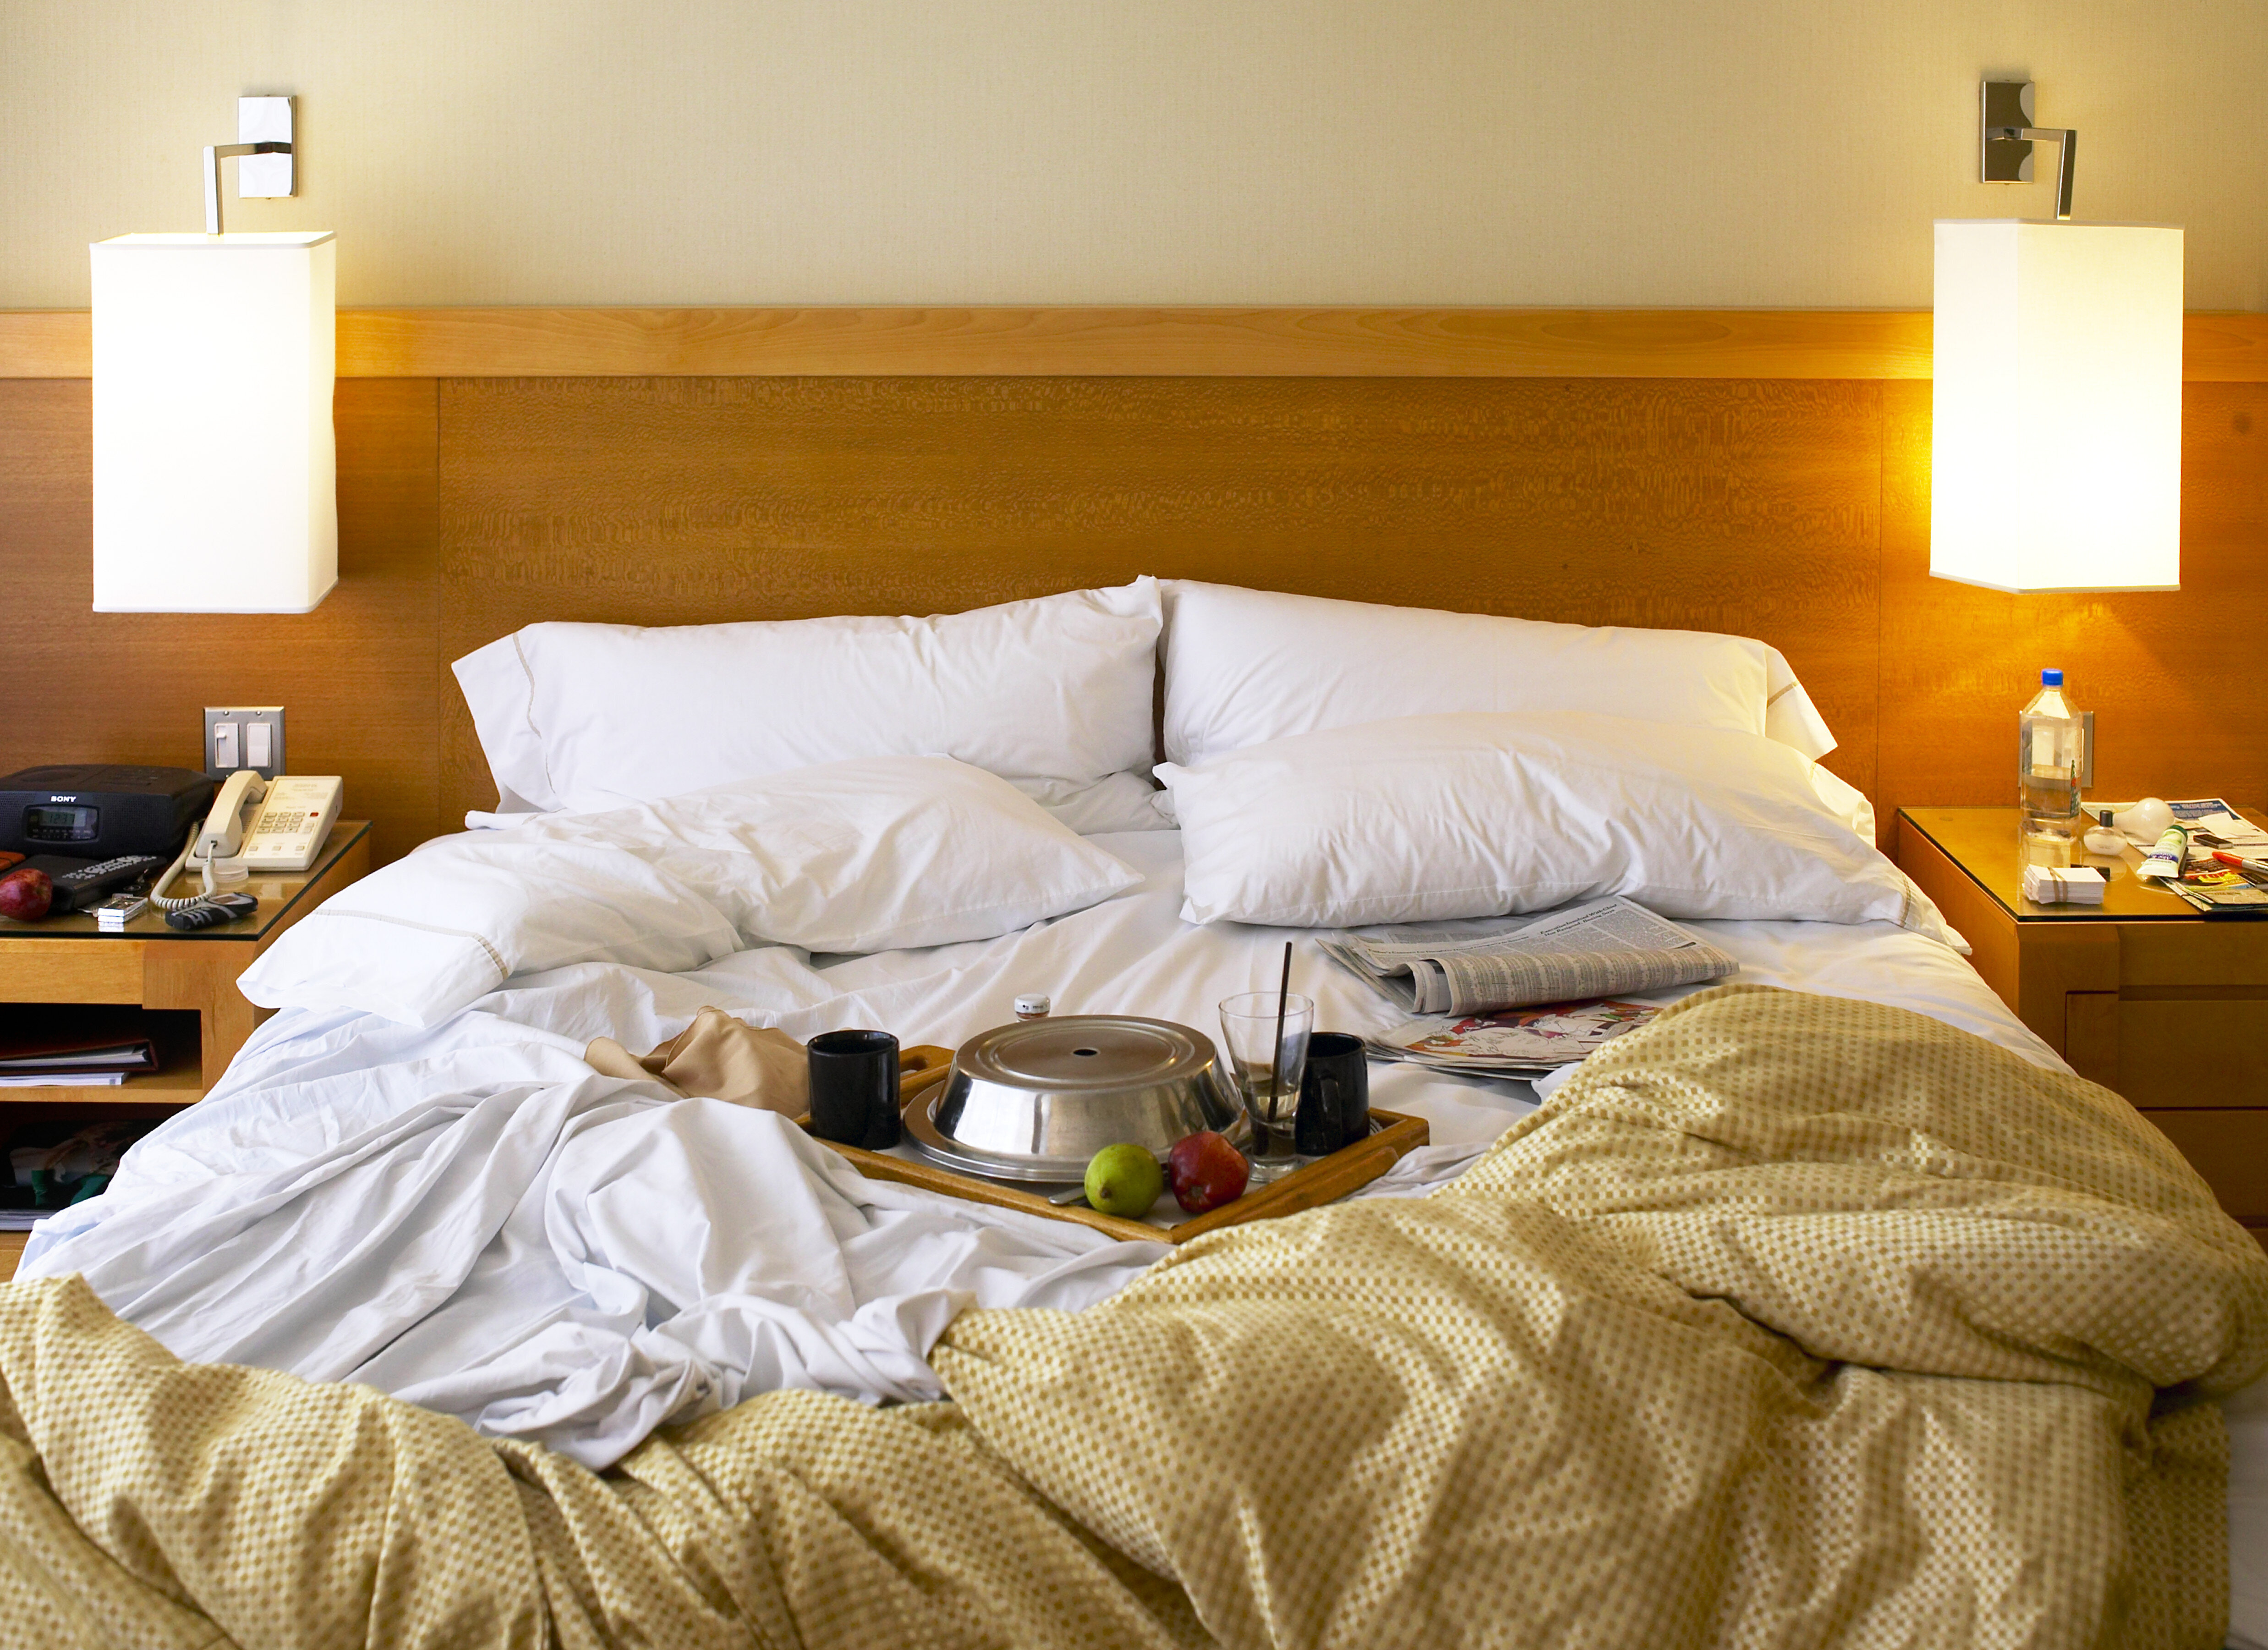 Как убрать постель. Кровать в отеле. Кровати для гостиниц. Грязная кровать в отеле. Кровать в гостиничном номере.